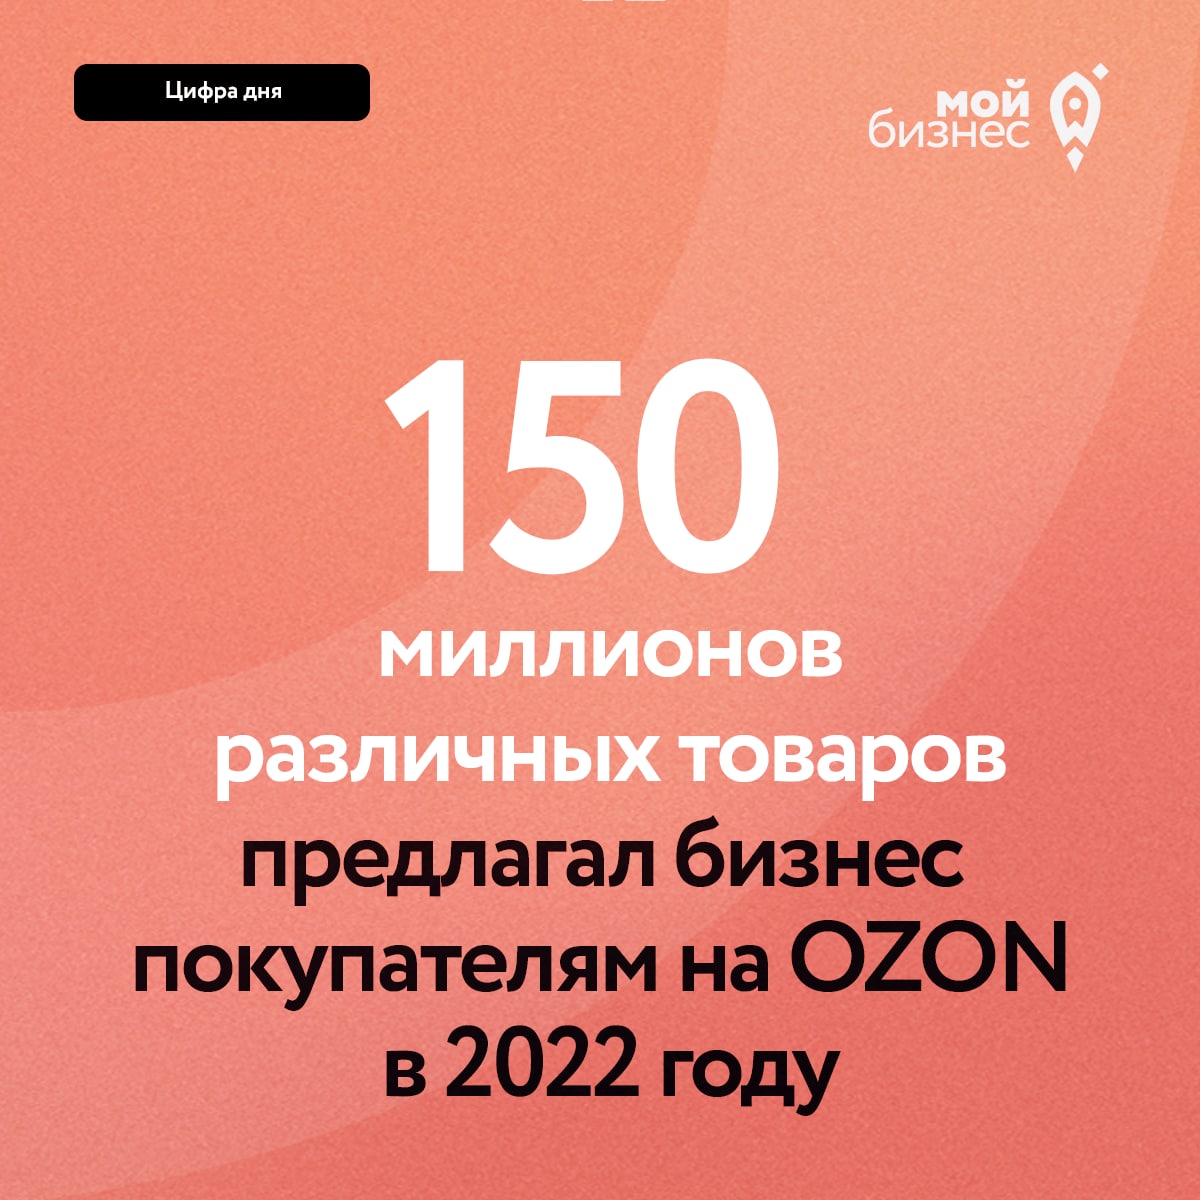 150 МИЛЛИОНОВ РАЗЛИЧНЫХ ТОВАРОВ ПРЕДЛАГАЛ ПОКУПАТЕЛЯМ БИЗНЕС НА OZON В 2022 ГОДУ